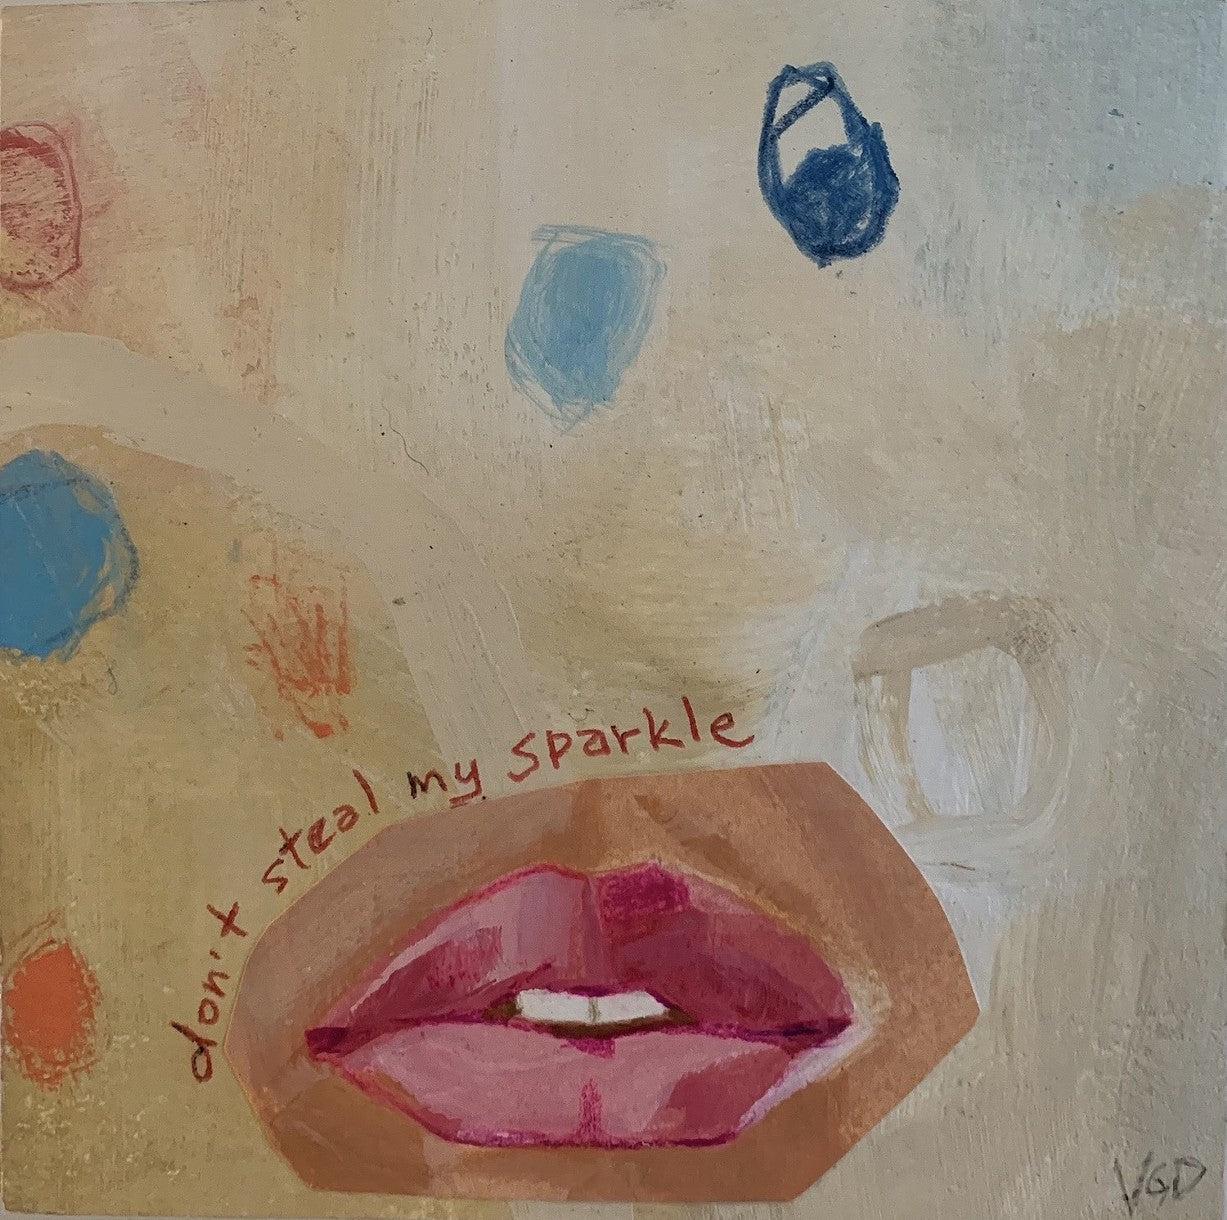 Don't steal my sparkle by Vikki Drummond